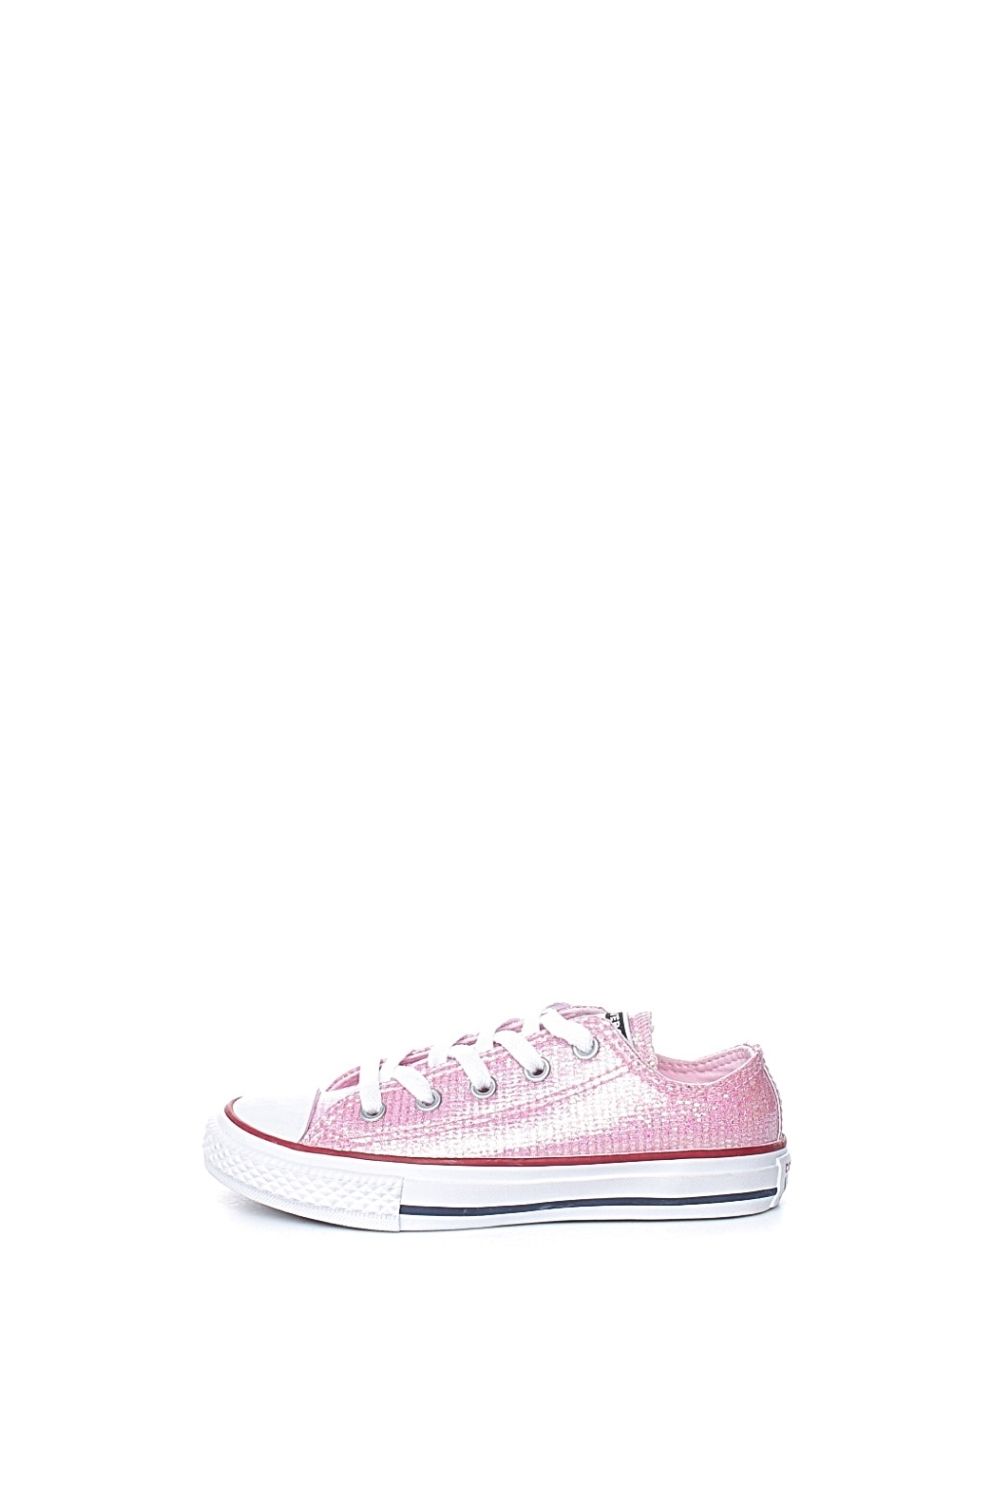 CONVERSE – Παιδικά sneakers με glitter CONVERSE Chuck Taylor All Star ροζ 1687574.0-00E5